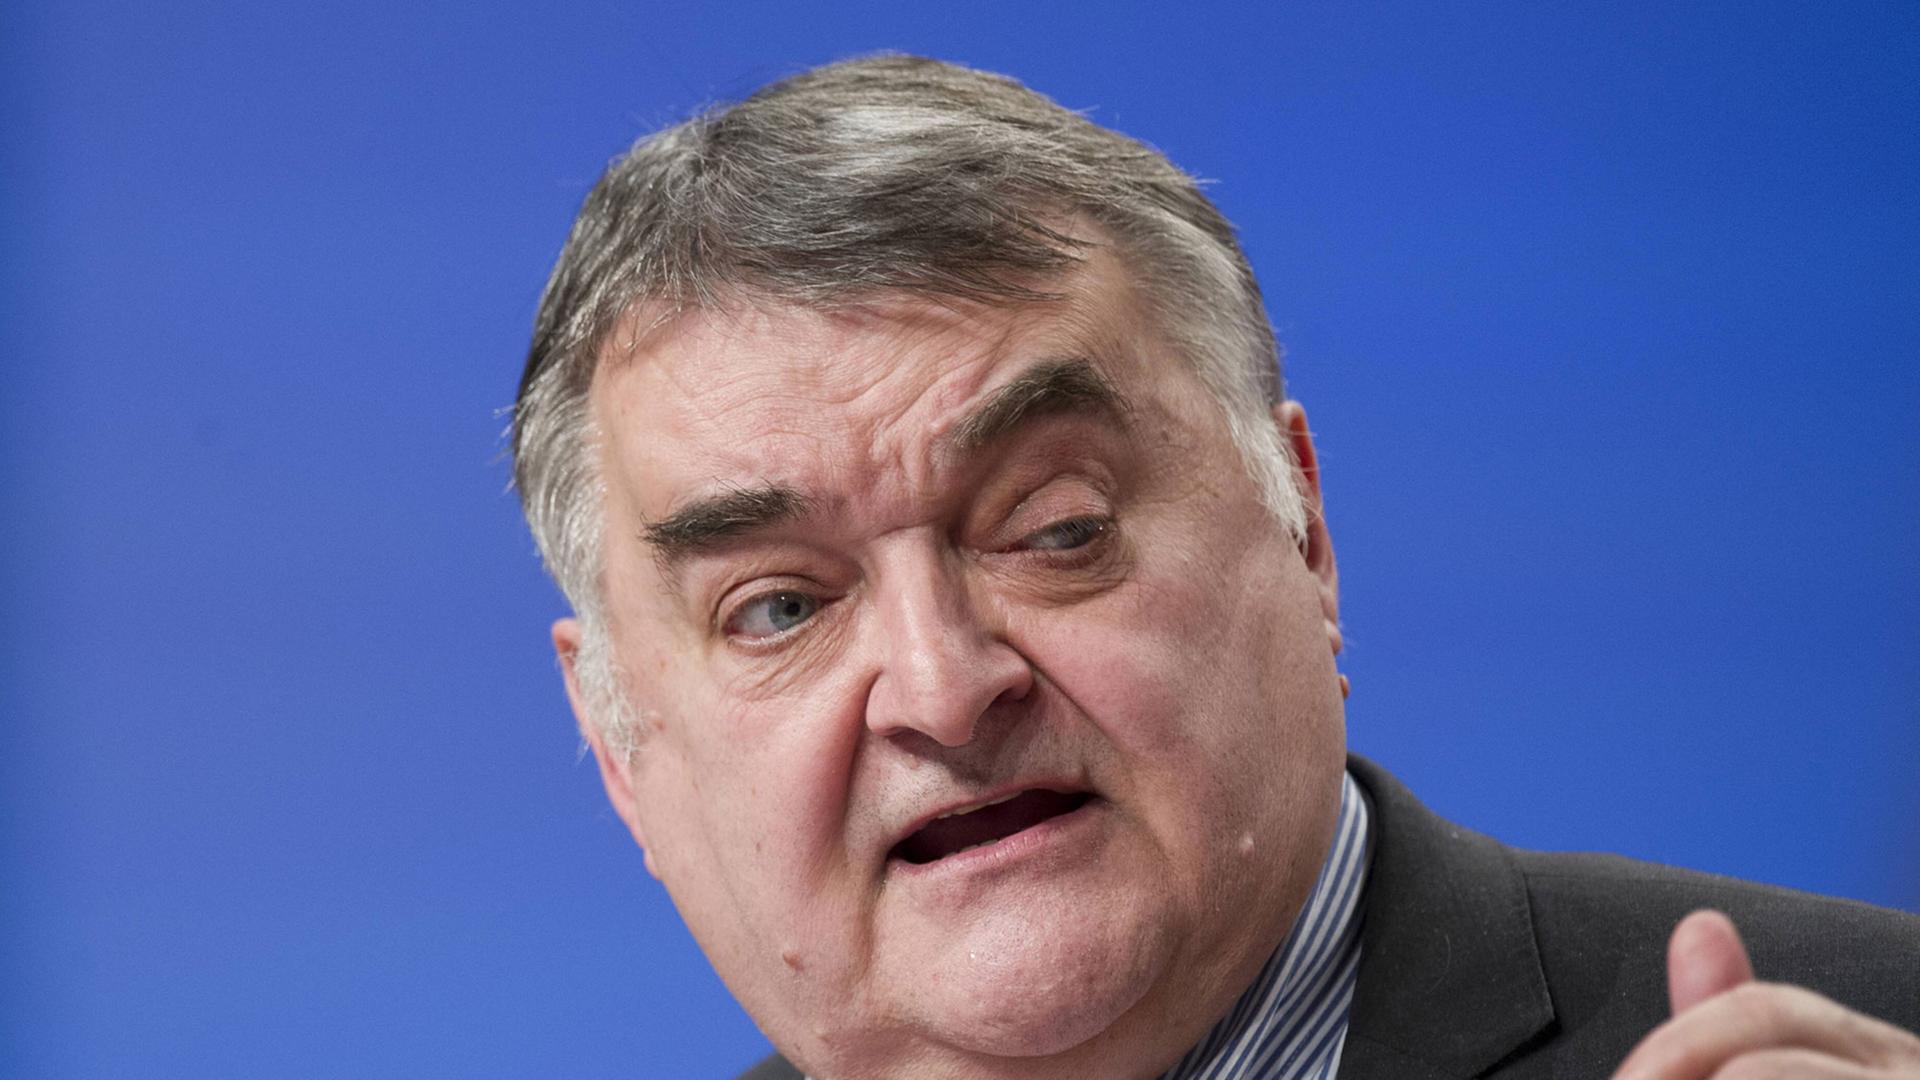 Herbert Reul, Vorsitzender der CDU/CSU-Fraktion im Europaparlament, hält am 10.12.2014 eine Rede auf dem CDU-Bundesparteitag in Köln.